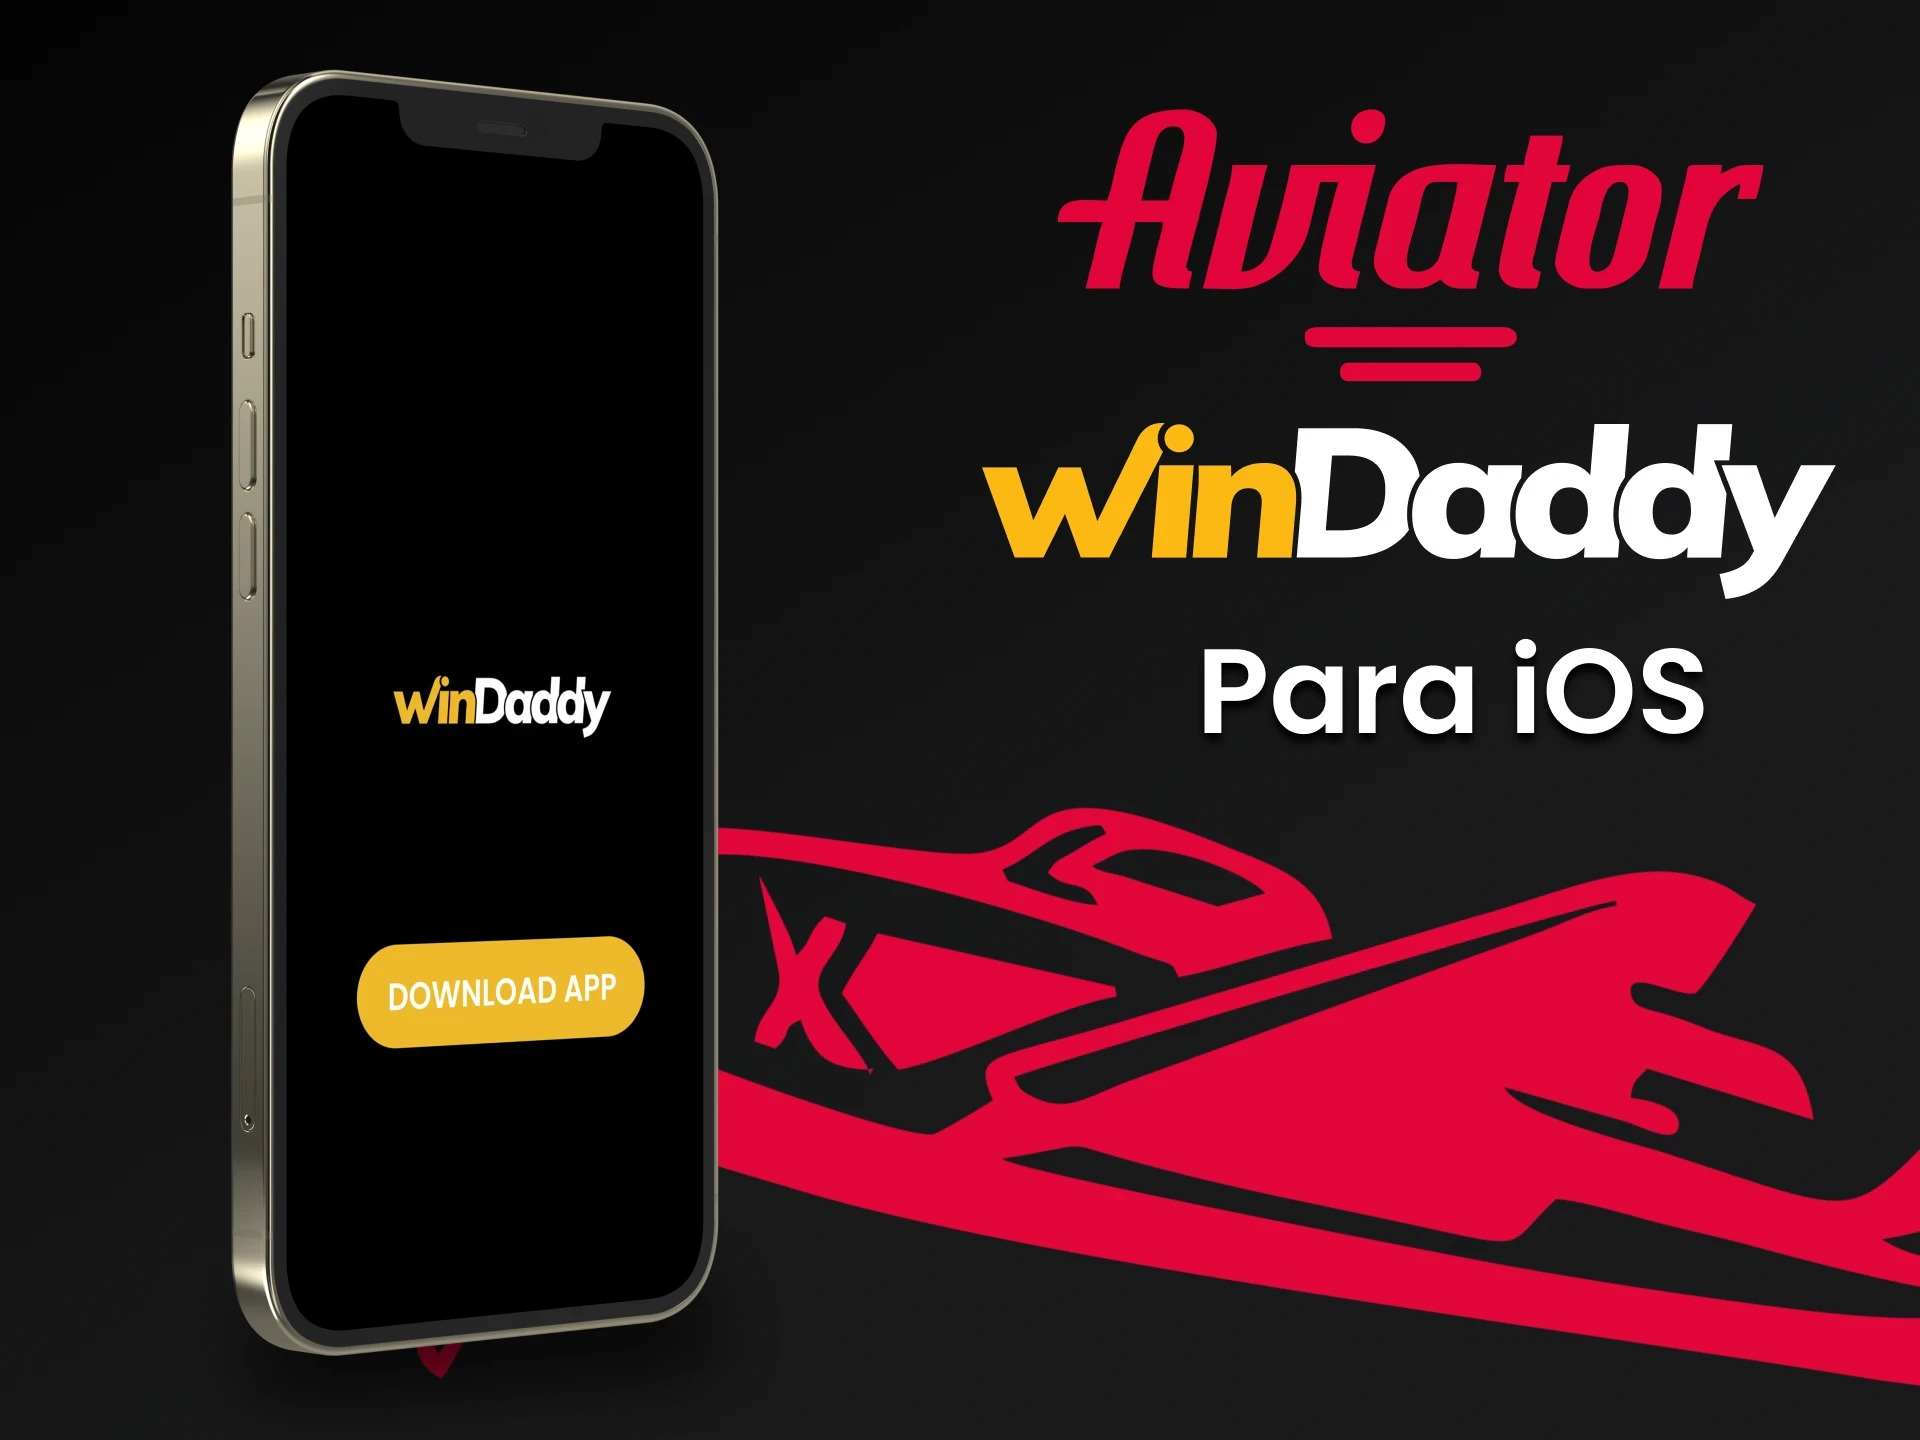 Faça o download do aplicativo WinDaddy para iOS para jogar Aviator.